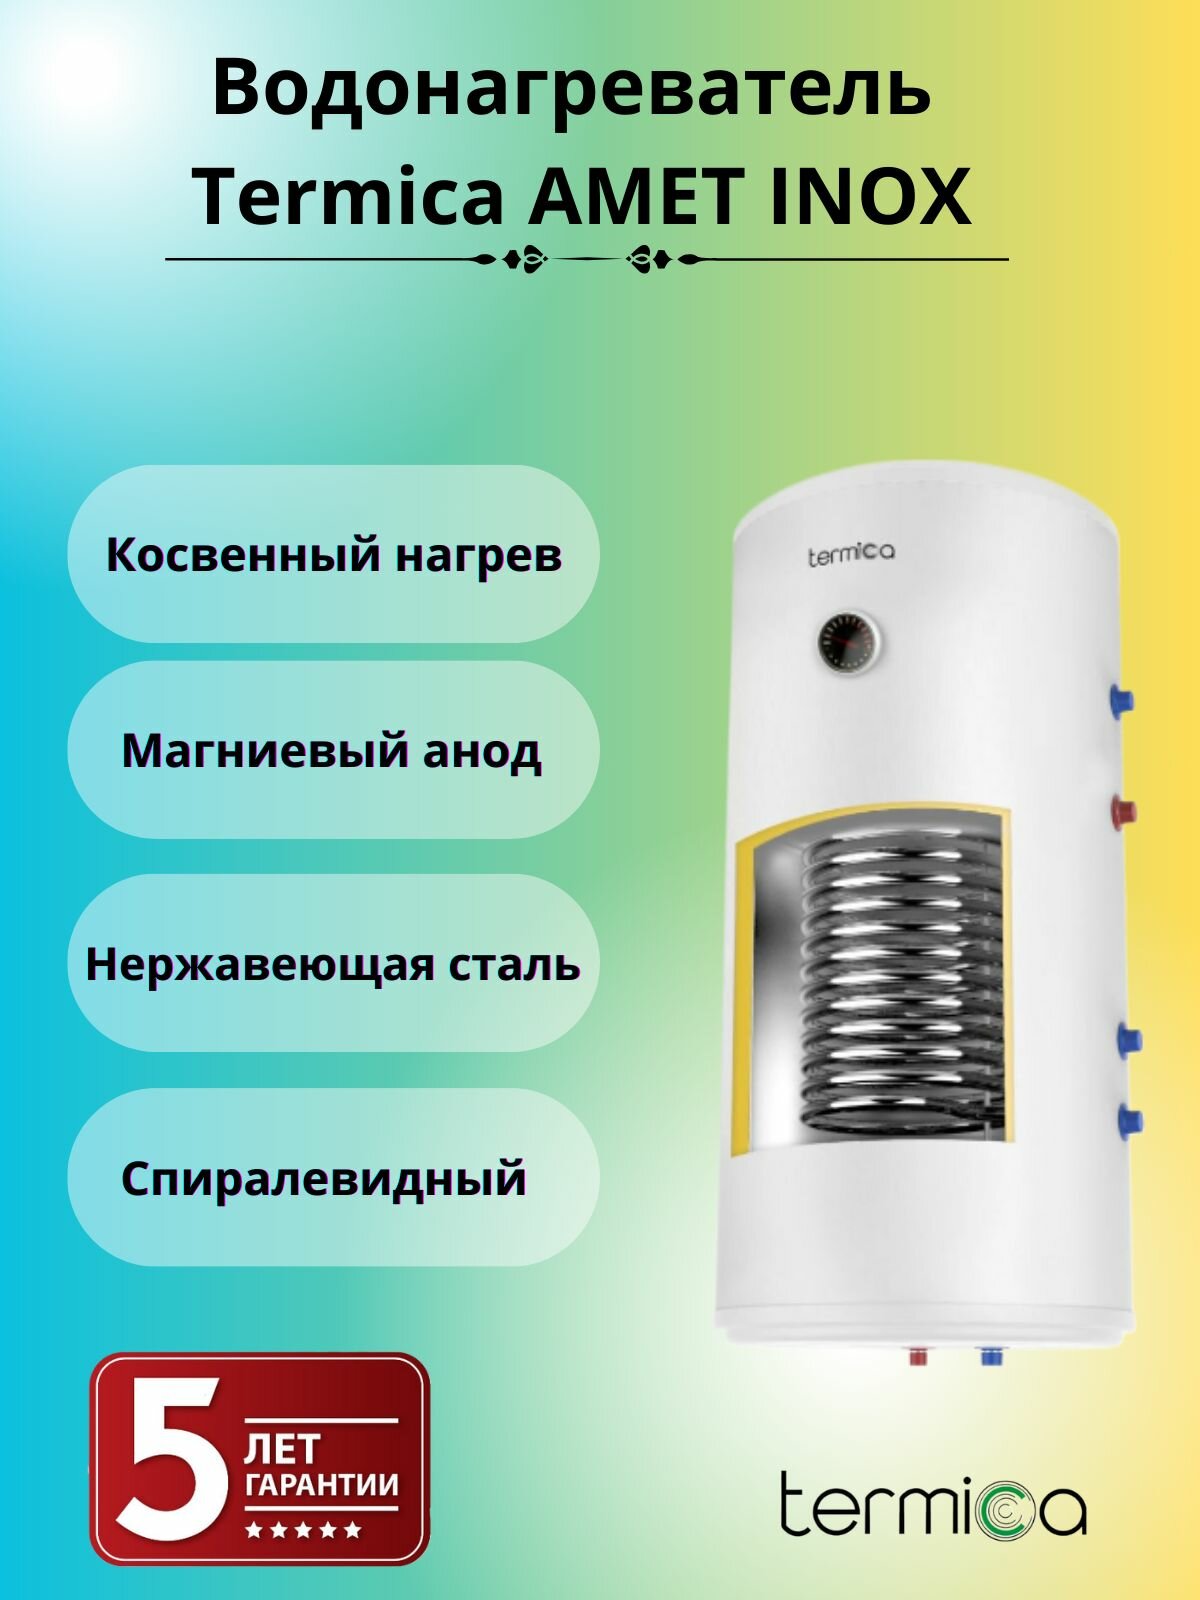 Termica AMET 80W INOX настенный водонагреватель косвенного нагрева 85111080